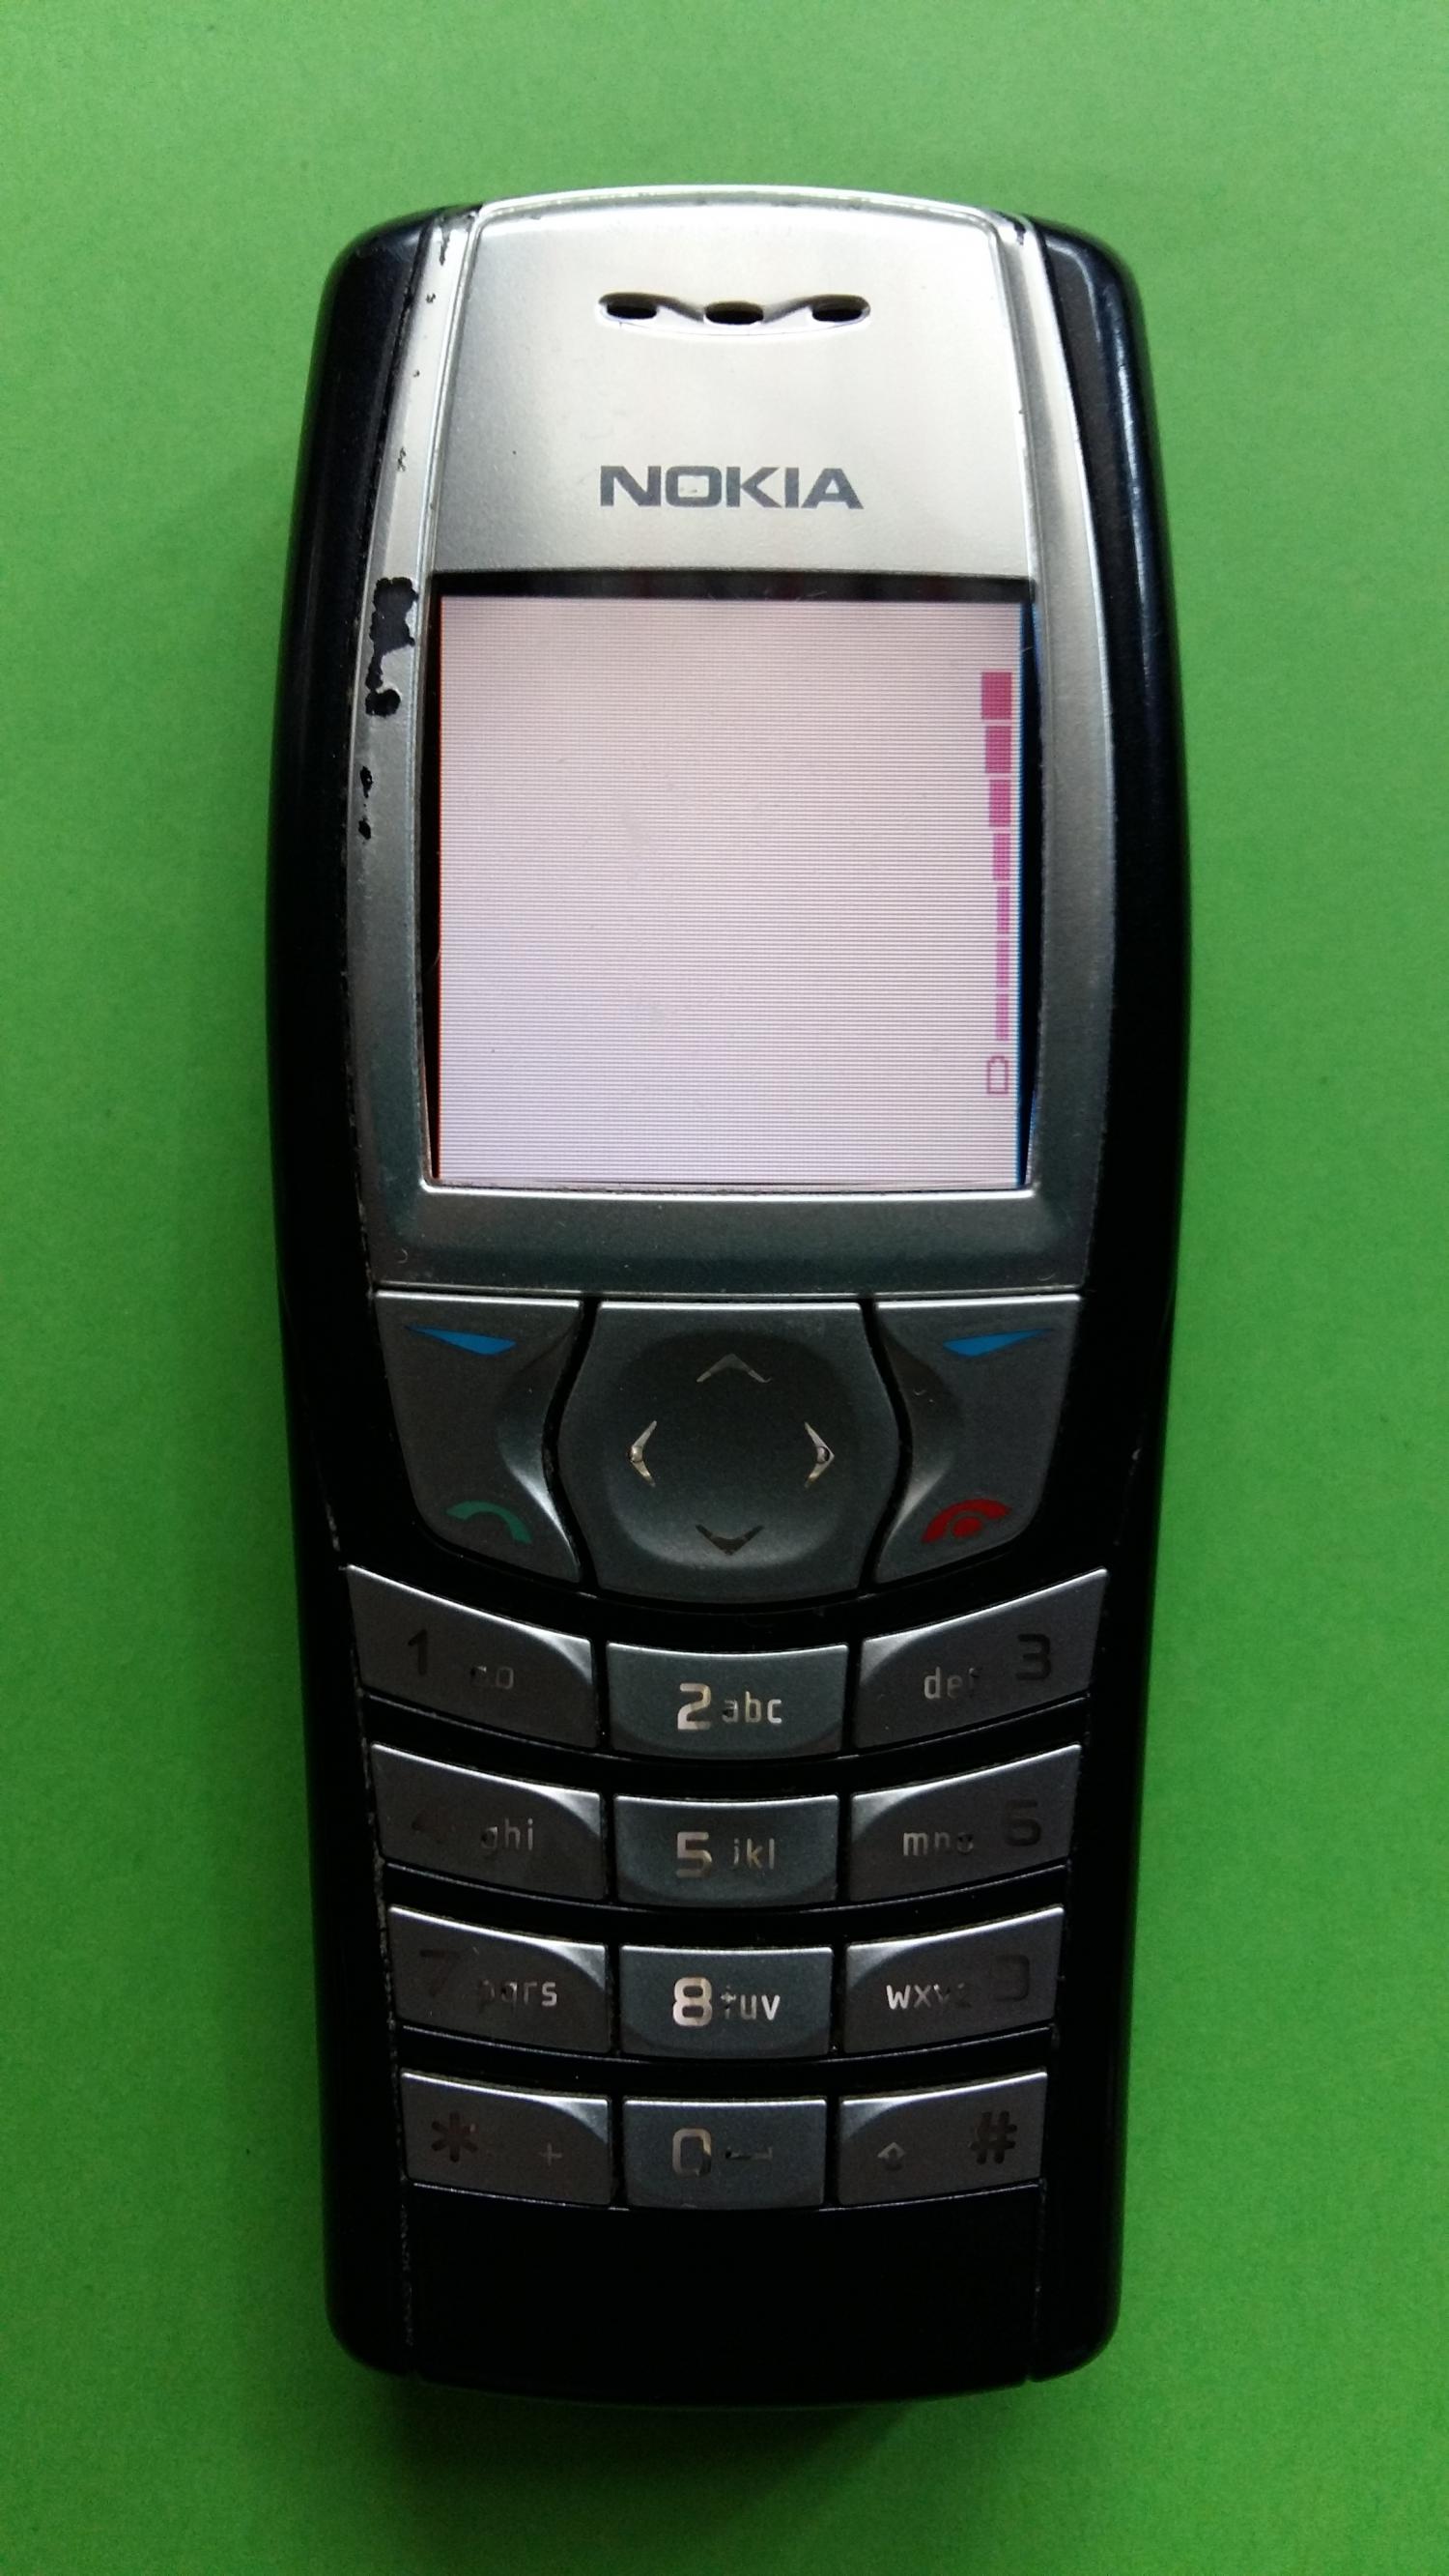 image-7335697-Nokia 6610 (3)1.jpg